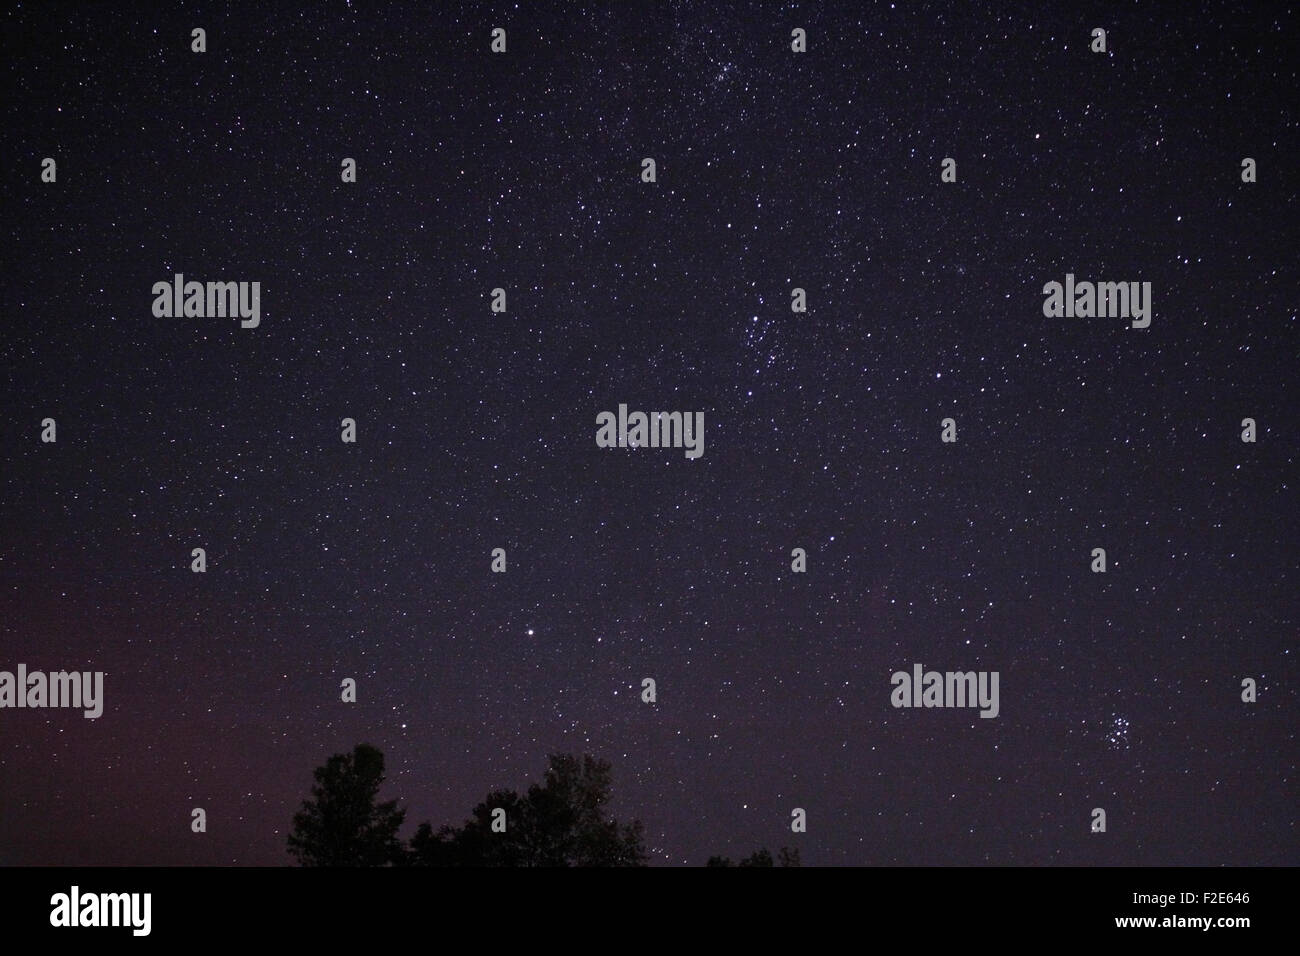 Cielo nocturno con estrellas y objetos celestes incluida la constelación de Perseo en la parte central derecha del cielo nocturno Foto de stock